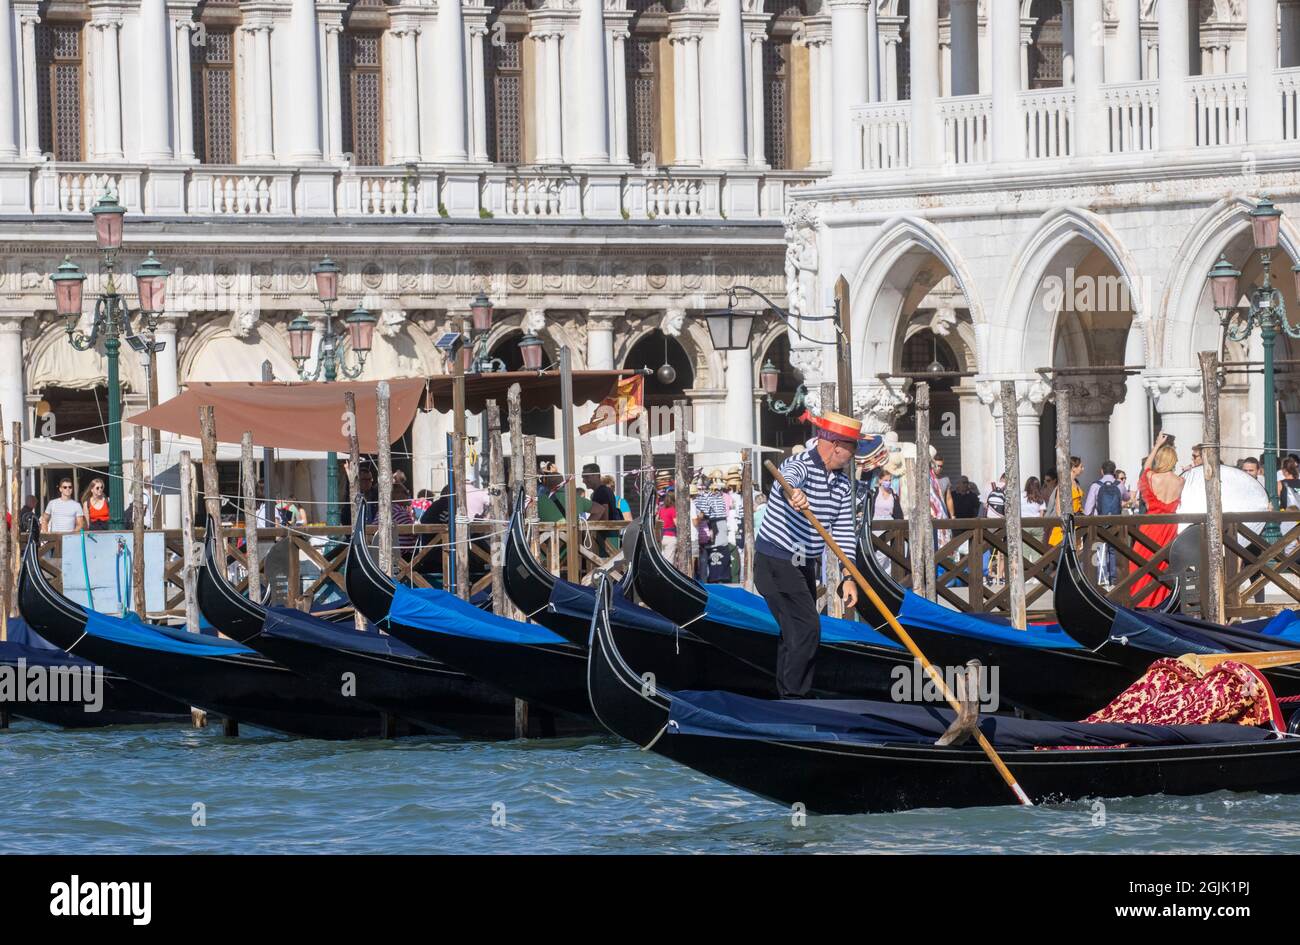 Una Gondola sul Canal Grande di Venezia che conduce alla laguna di San Marco. I turisti godono della splendida architettura di Venezia da una gondola. Foto Stock